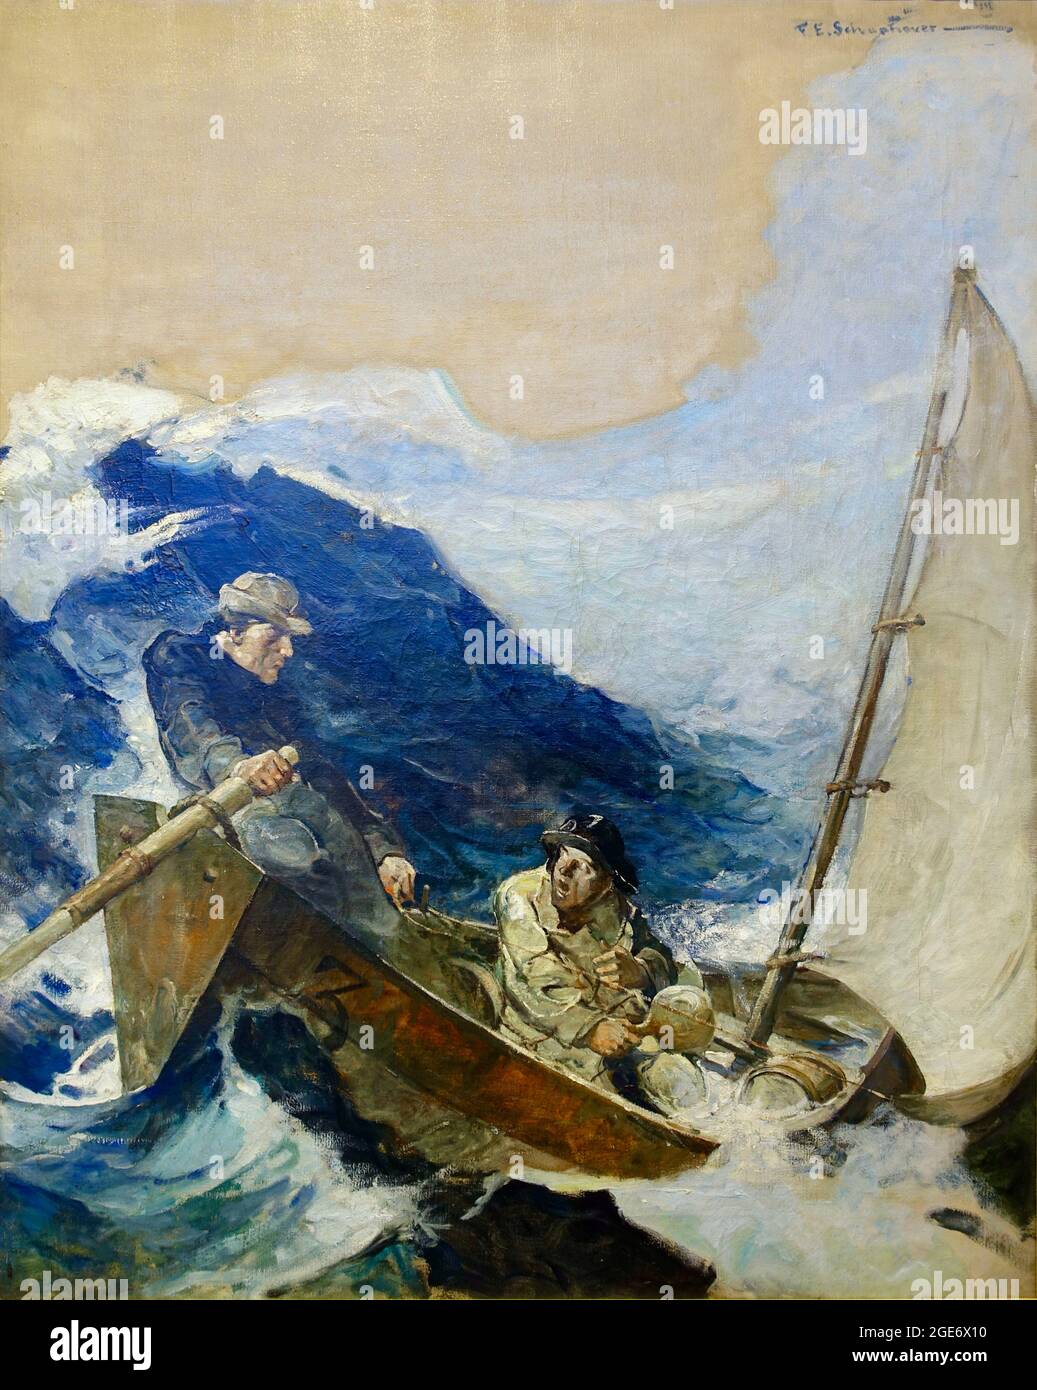 Frank Schoonover artwork - The Trawler - 1914 - Rough seas Stock Photo